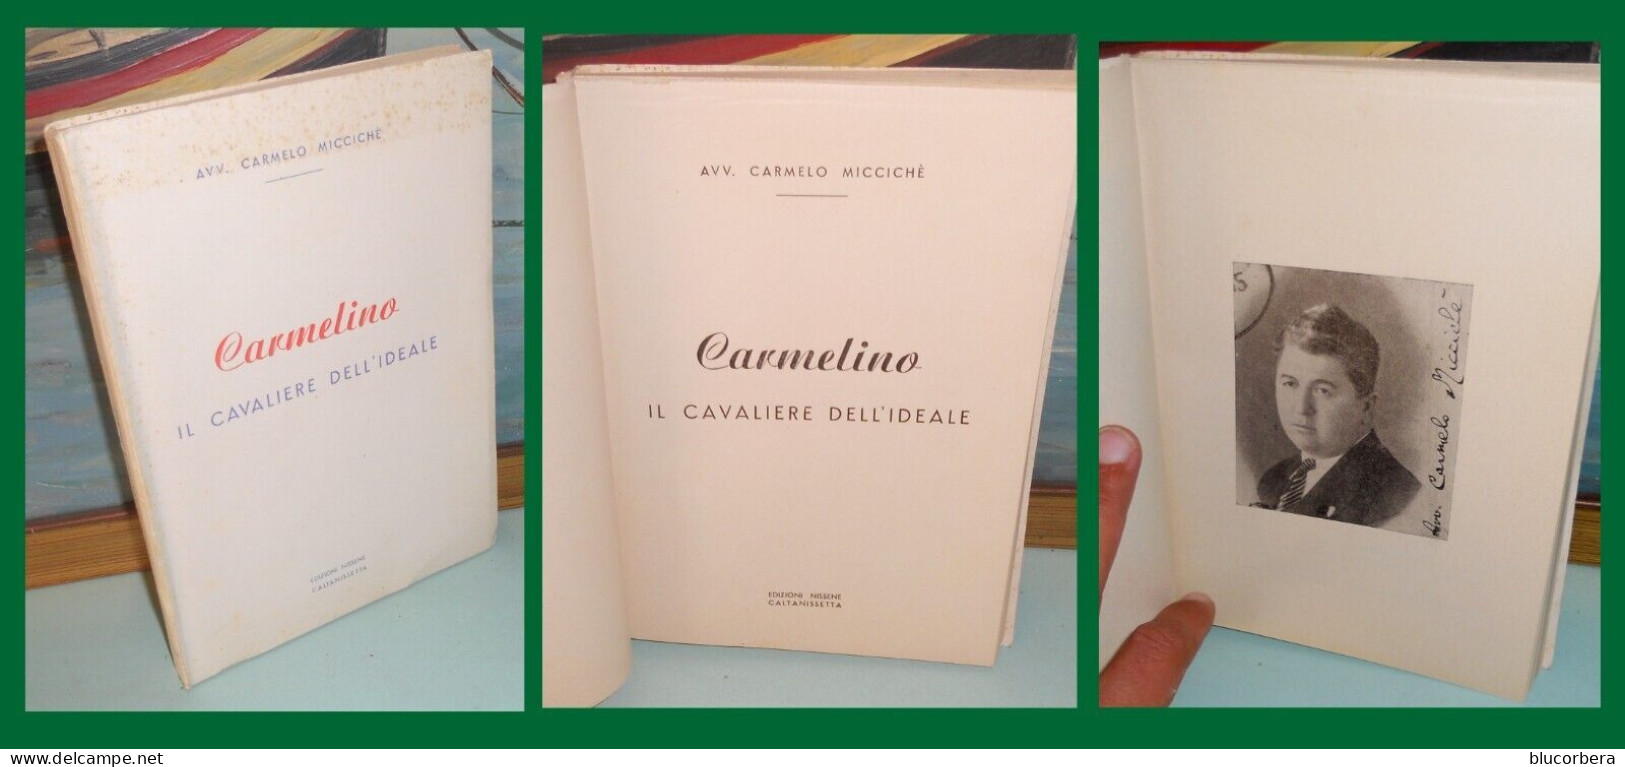 AVV. CARMELO MICCICHE': CARMELINO BROSS. EDIT. CALTANISSETTA ED. NISSENE PAG. 1959 - Nouvelles, Contes